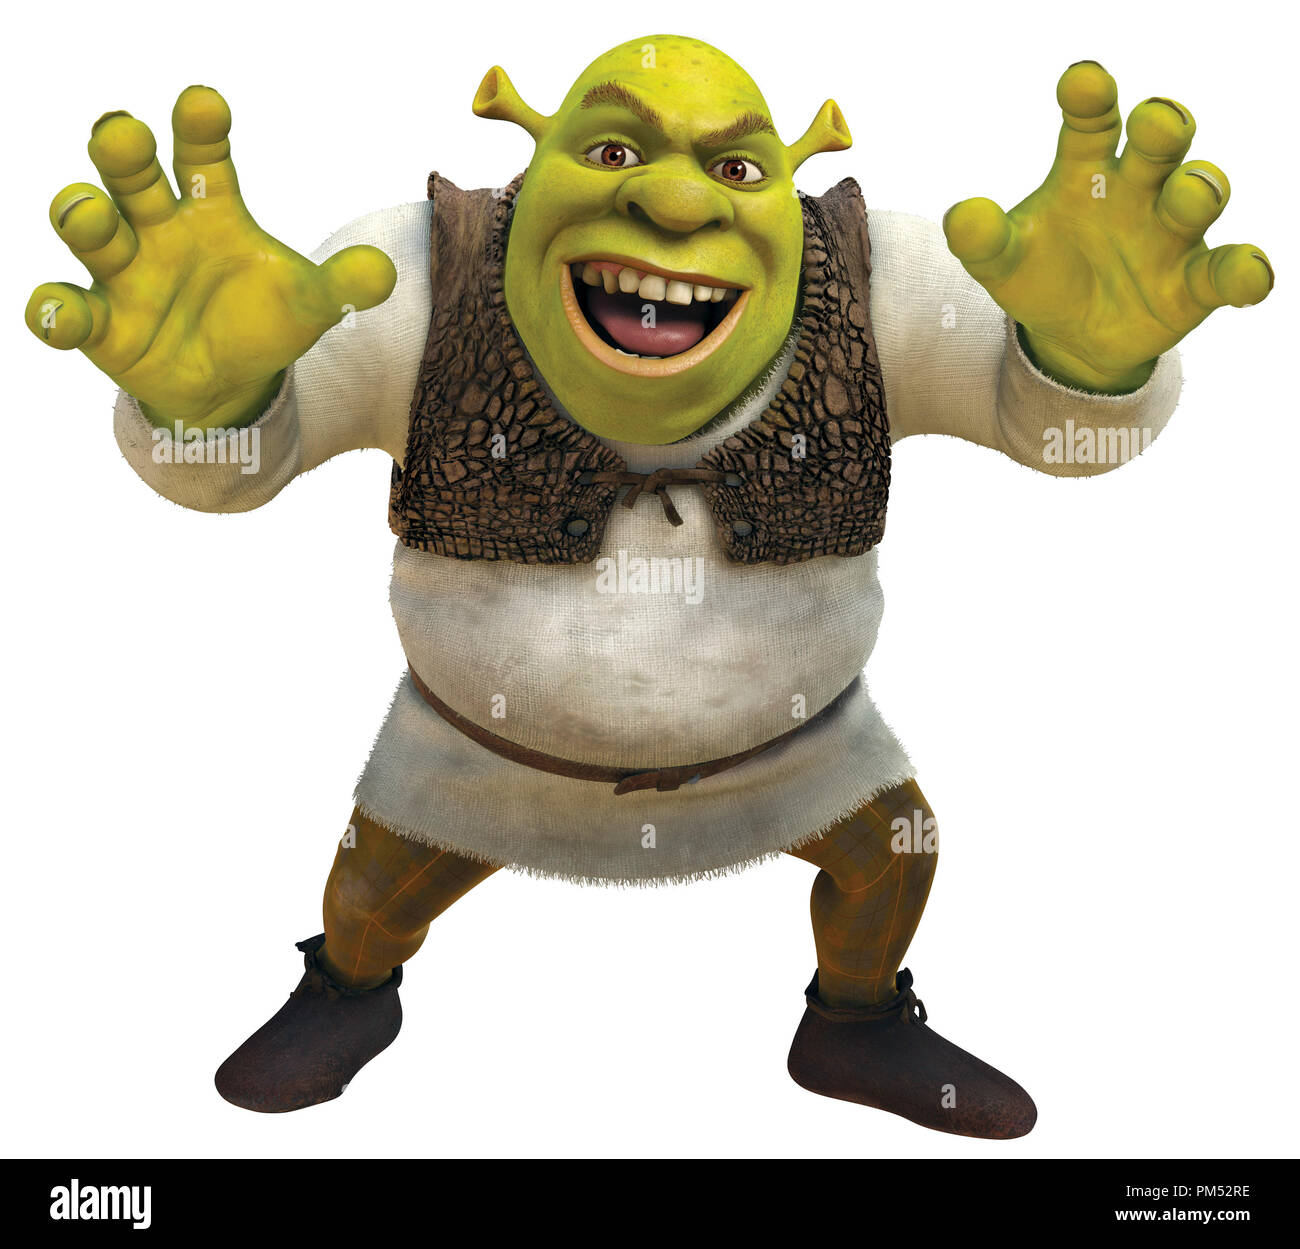 Shrek 'Shrek Forever After' © 2010 DreamWorks Animation LLC. All Rights Reserved. Stock Photo